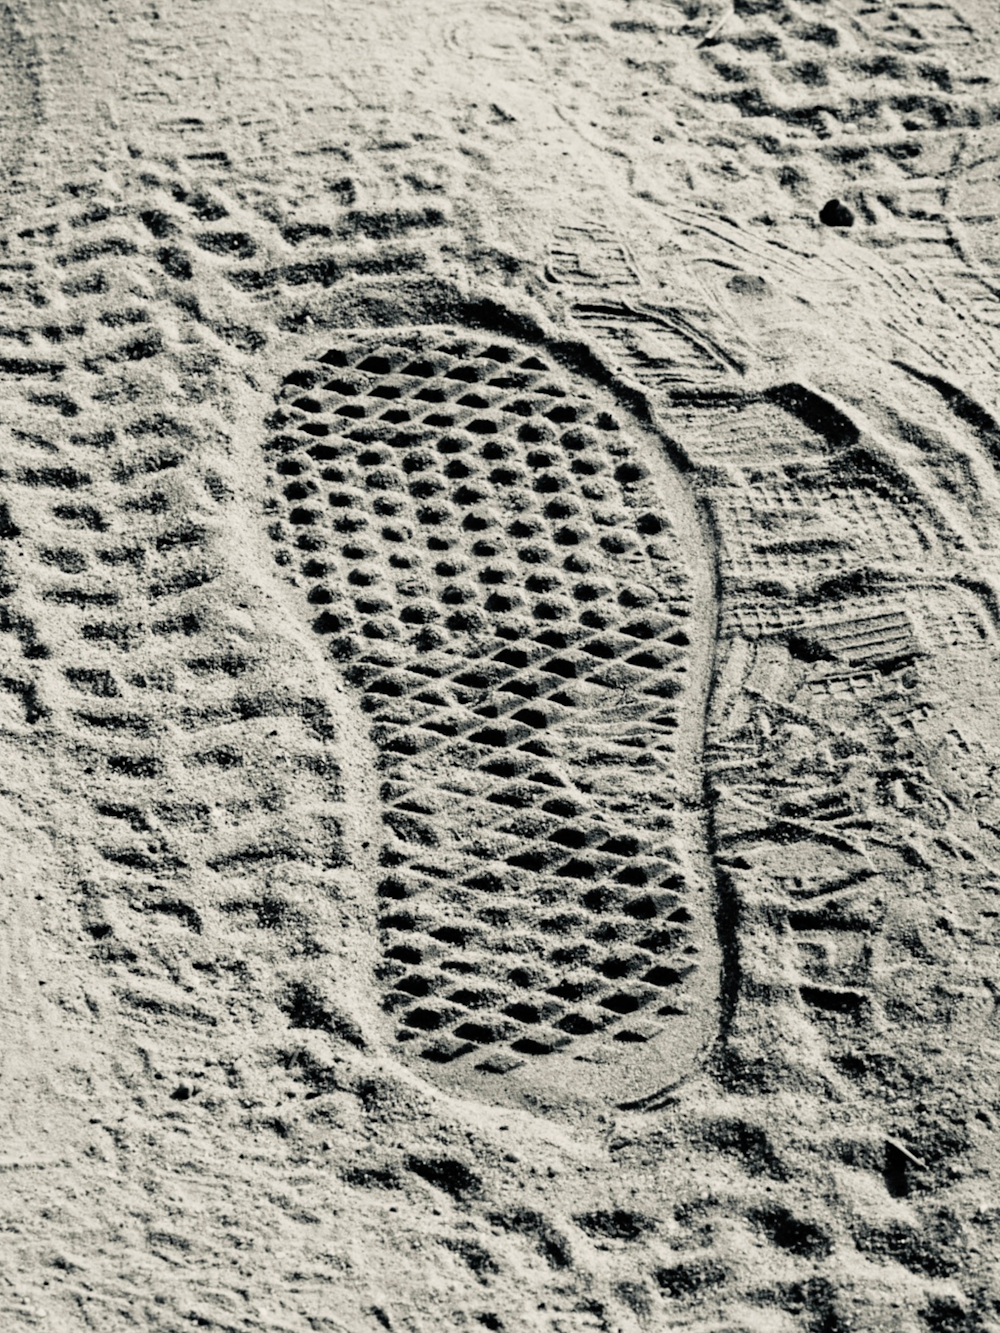 Le impronte del piede di una persona nella sabbia su una spiaggia